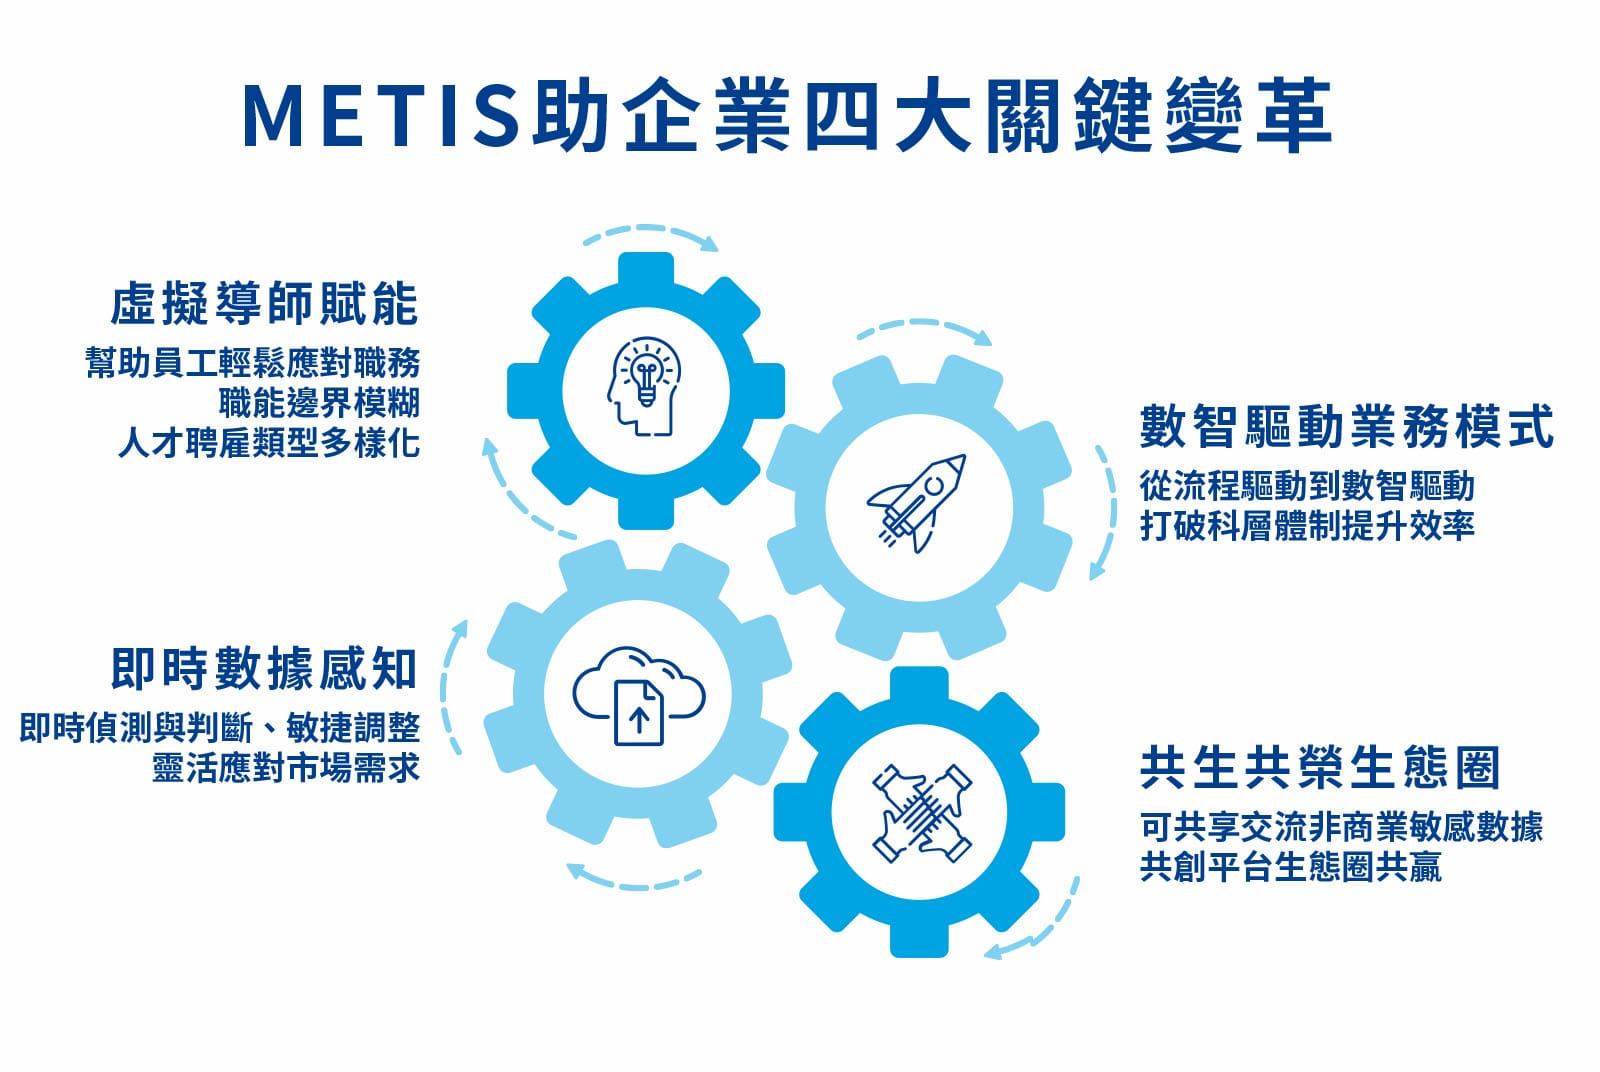 運用METIS轉型為數智企業，為企業帶來四大關鍵變革。（資料來源：天下雜誌整理）